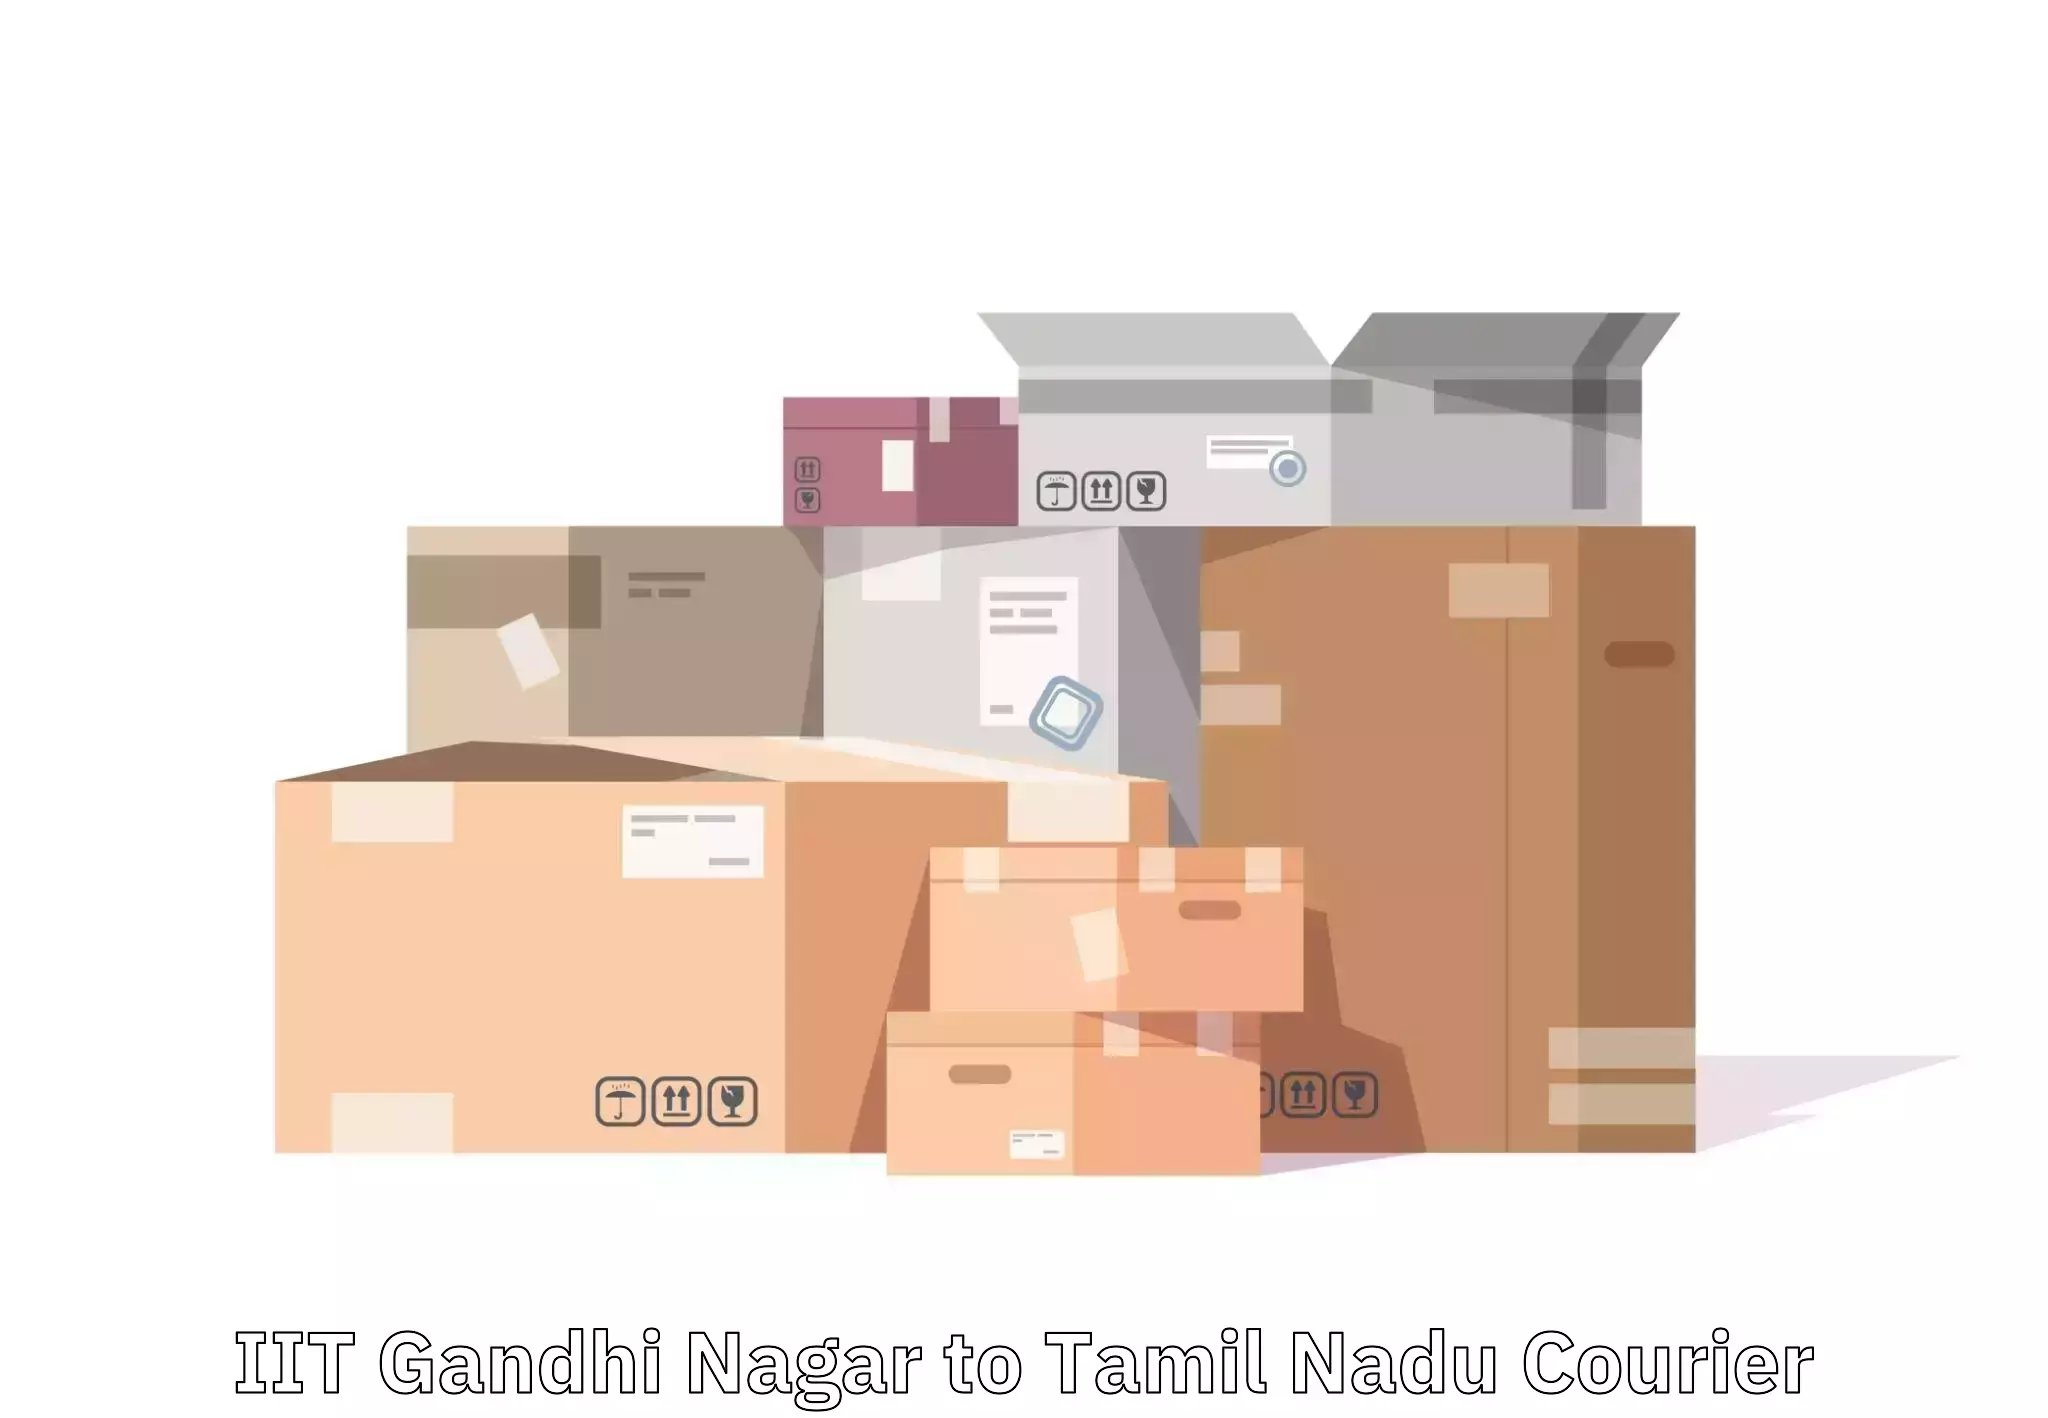 Baggage transport logistics IIT Gandhi Nagar to Manapparai